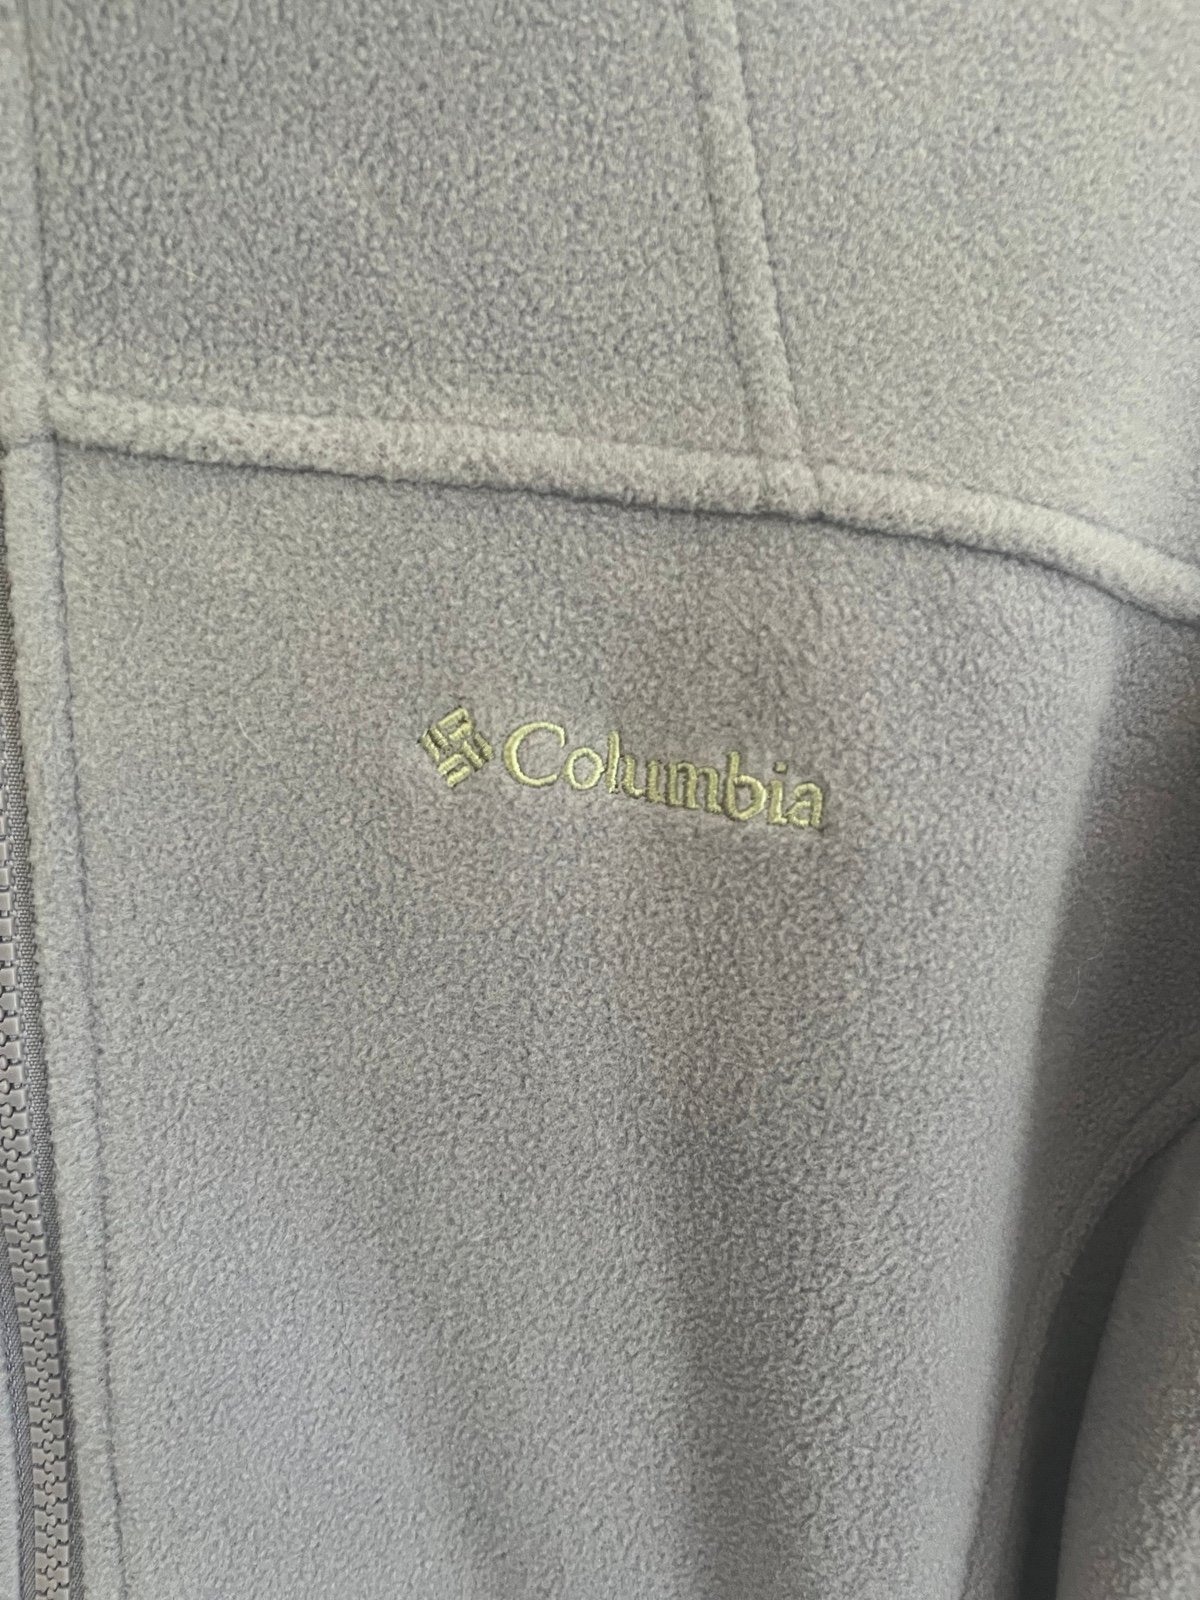 Comfortable Columbia Fleece Zip Up IEFmhHPW2 US Outlet